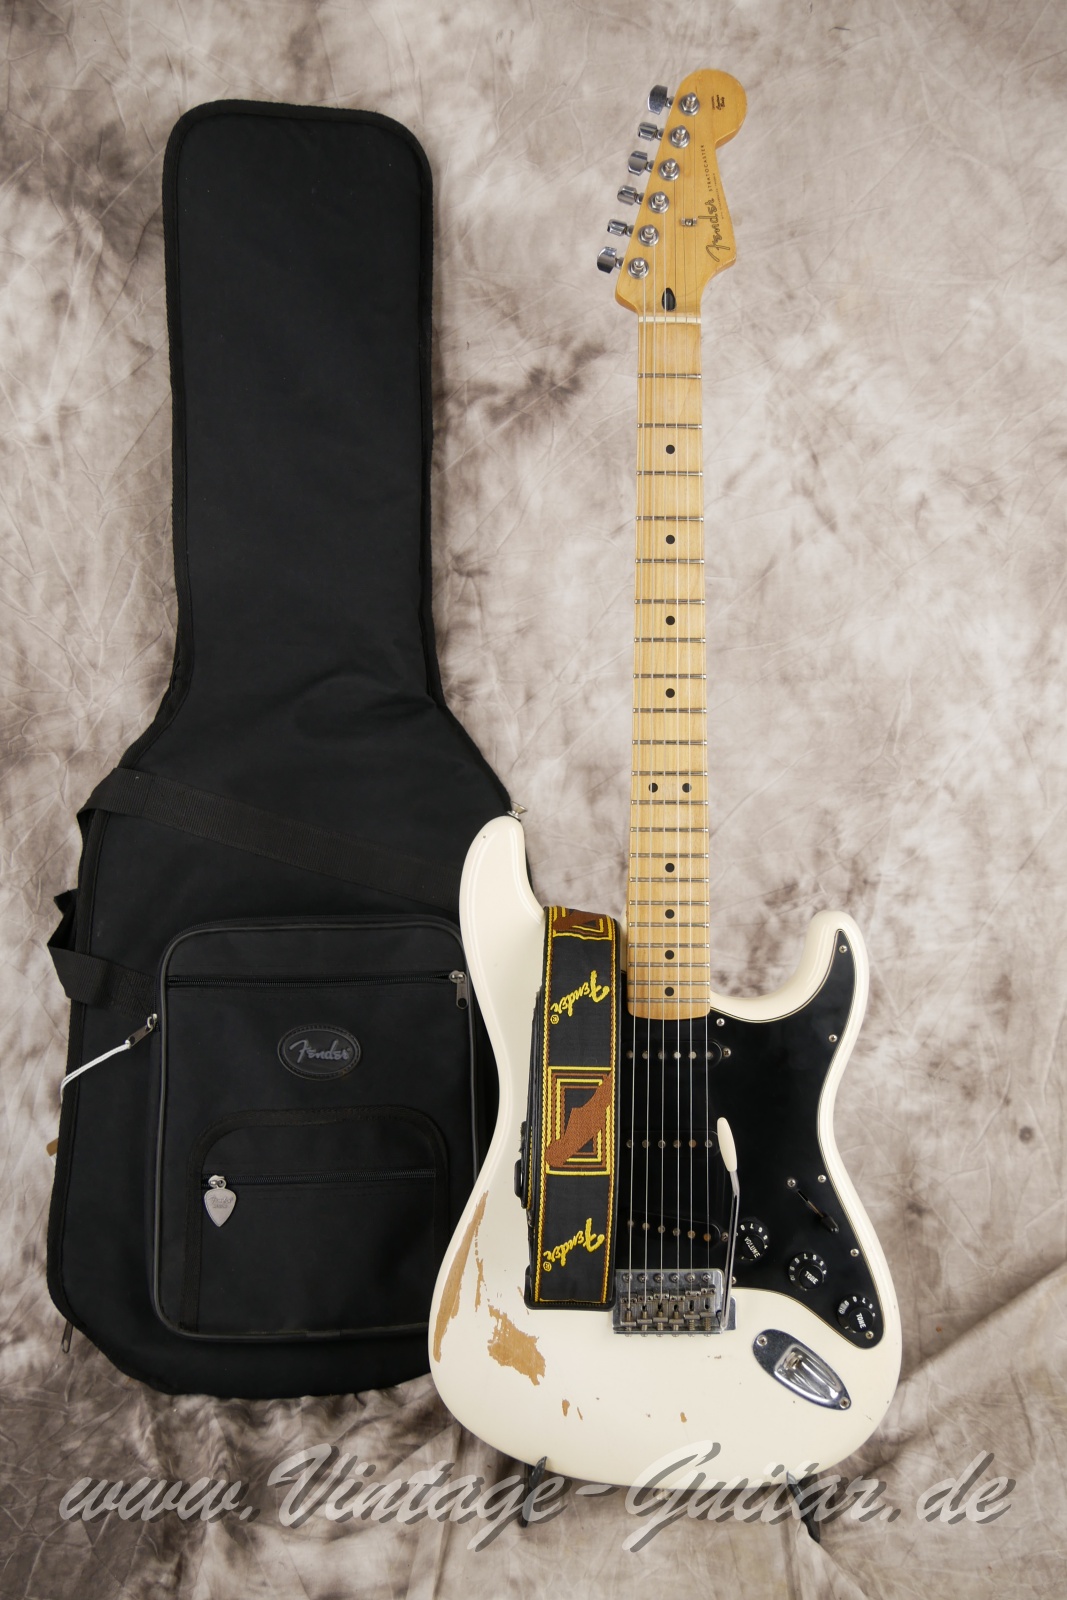 Fender-Stratocaster-roadworn-player-series-60s-reissue-2011-olympic-white-013.jpg